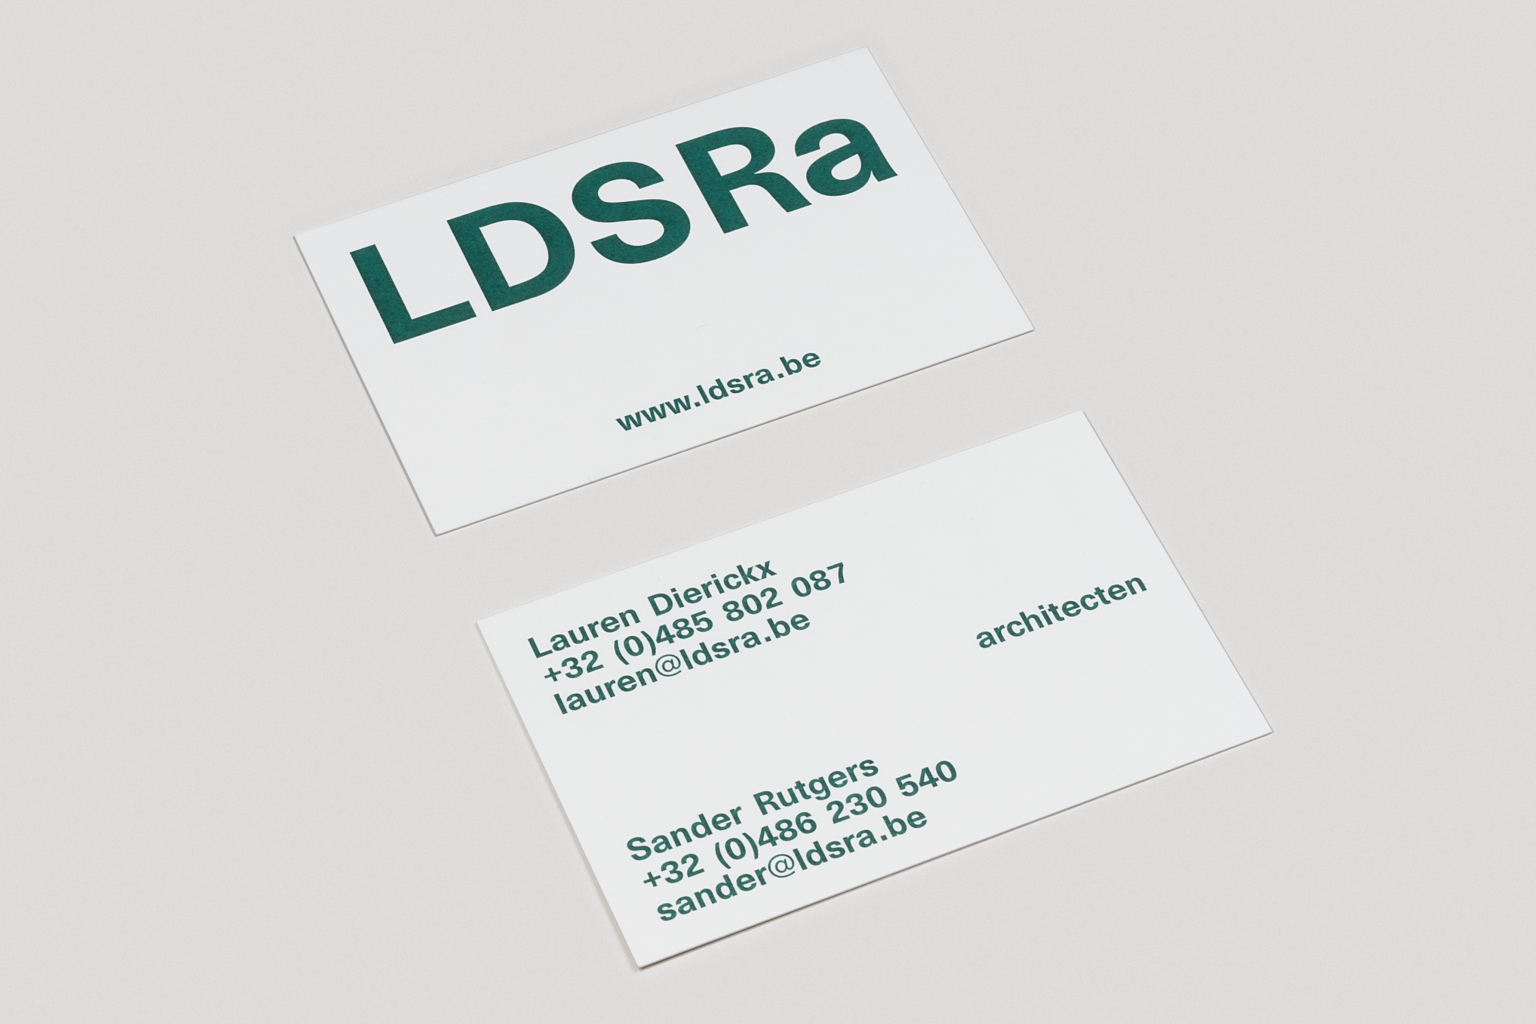 LDS Ra cards